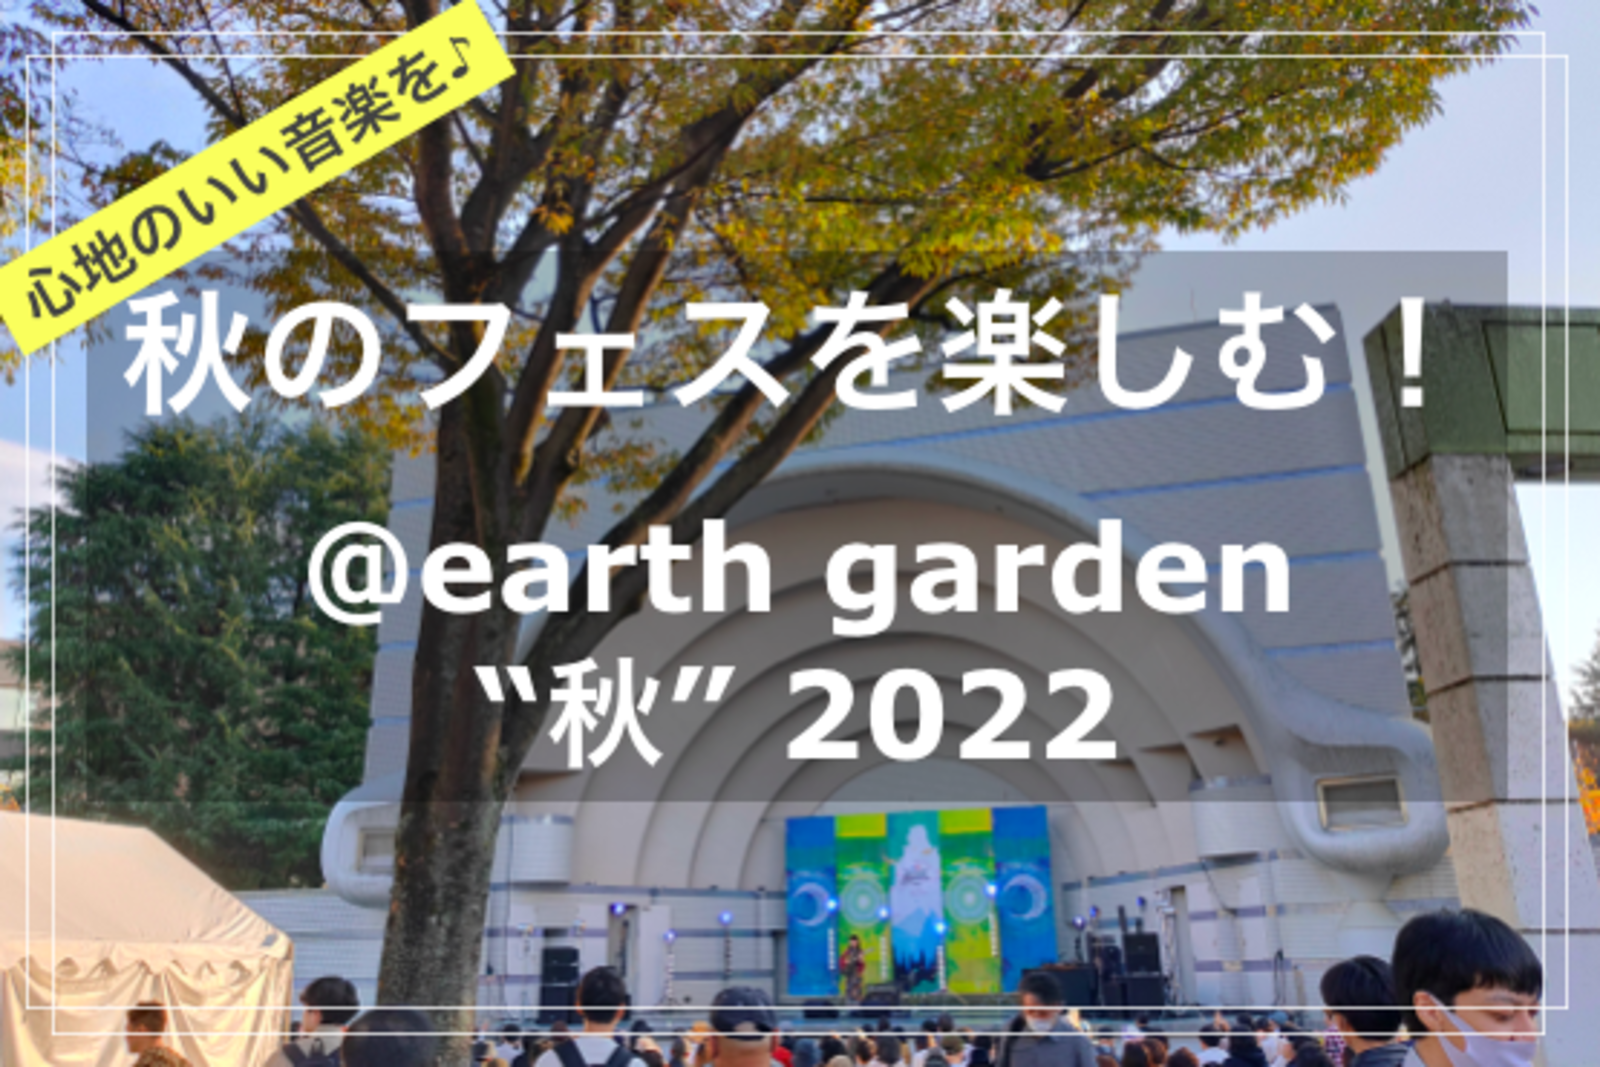 【季節を楽しむひととき in 文化の秋🍁】@earth garden “秋” 2022